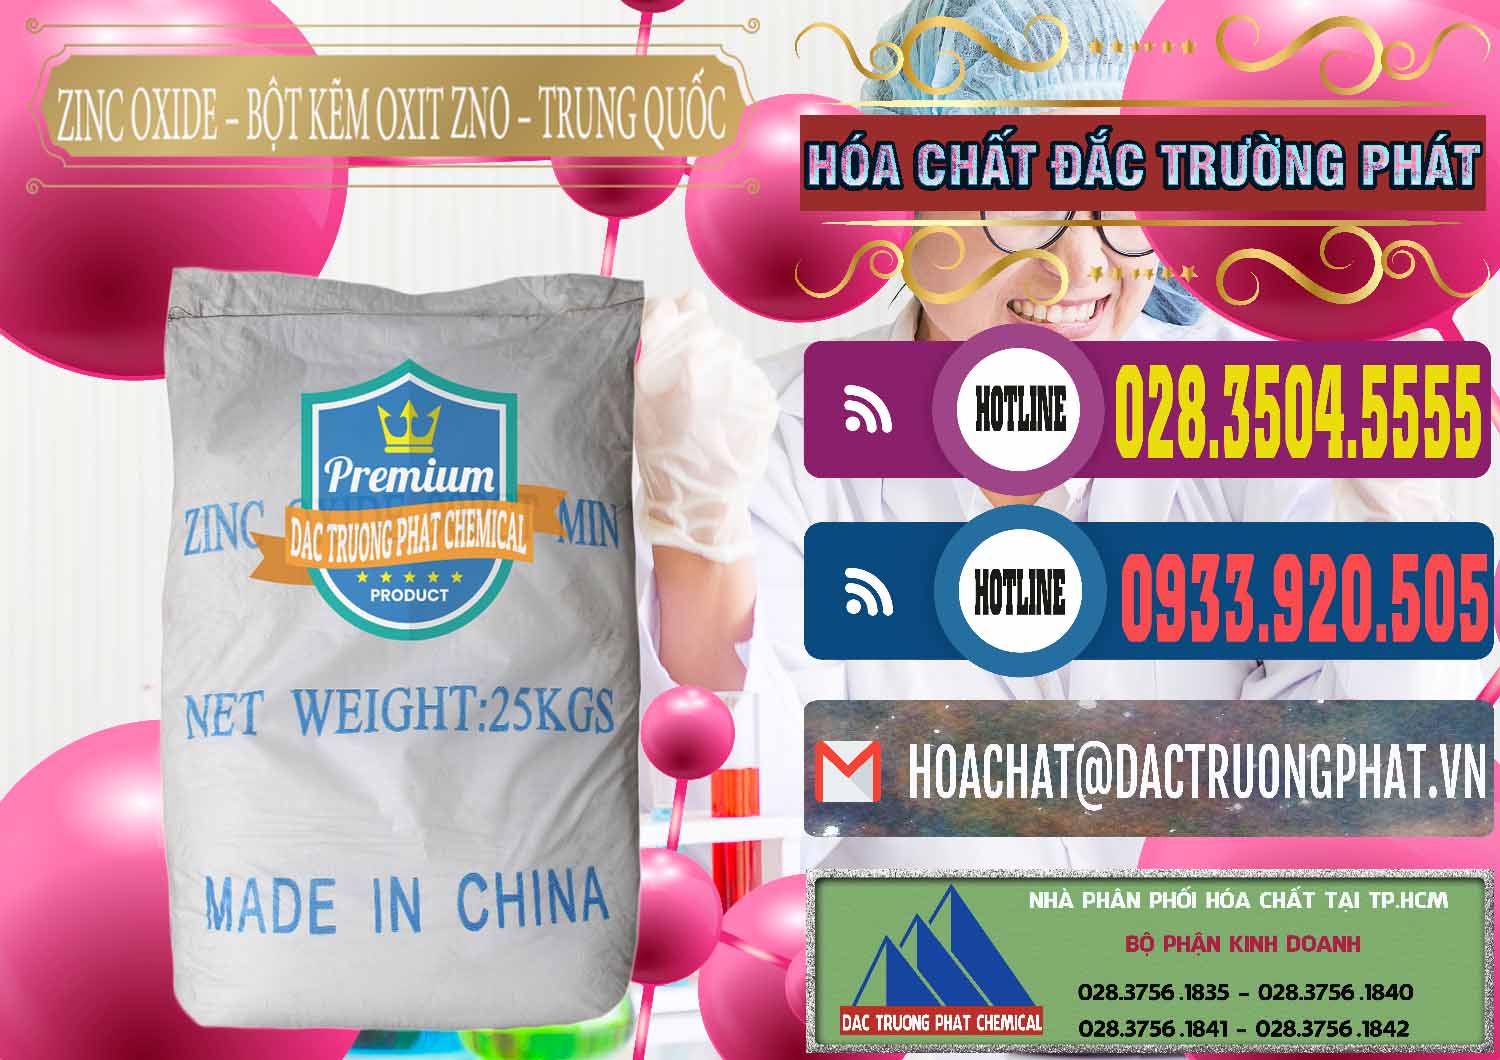 Nơi chuyên cung cấp & bán Zinc Oxide - Bột Kẽm Oxit ZNO Trung Quốc China - 0182 - Phân phối _ bán hóa chất tại TP.HCM - muabanhoachat.com.vn